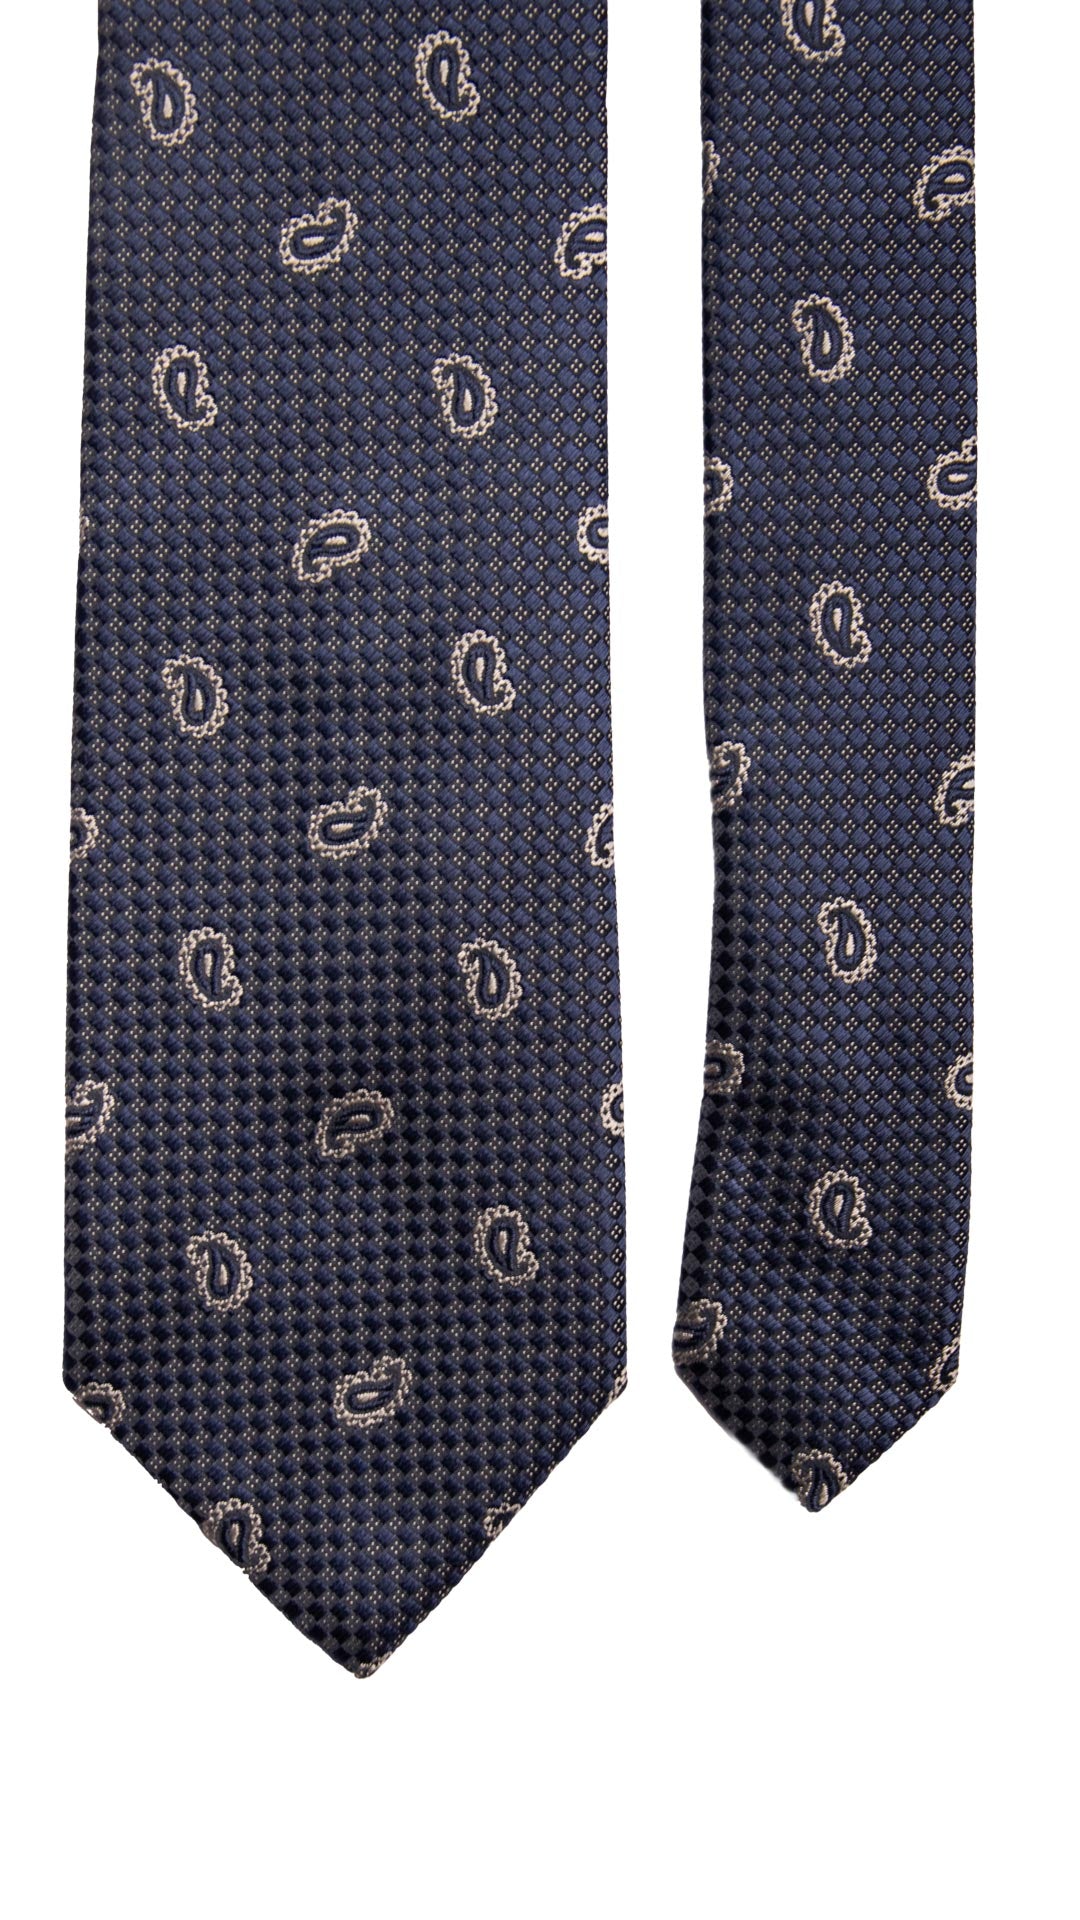 Cravatta da Cerimonia di Seta Blu Navy Paisley Tono su Tono Grigio Argento Made in italy Graffeo Cravatte Pala